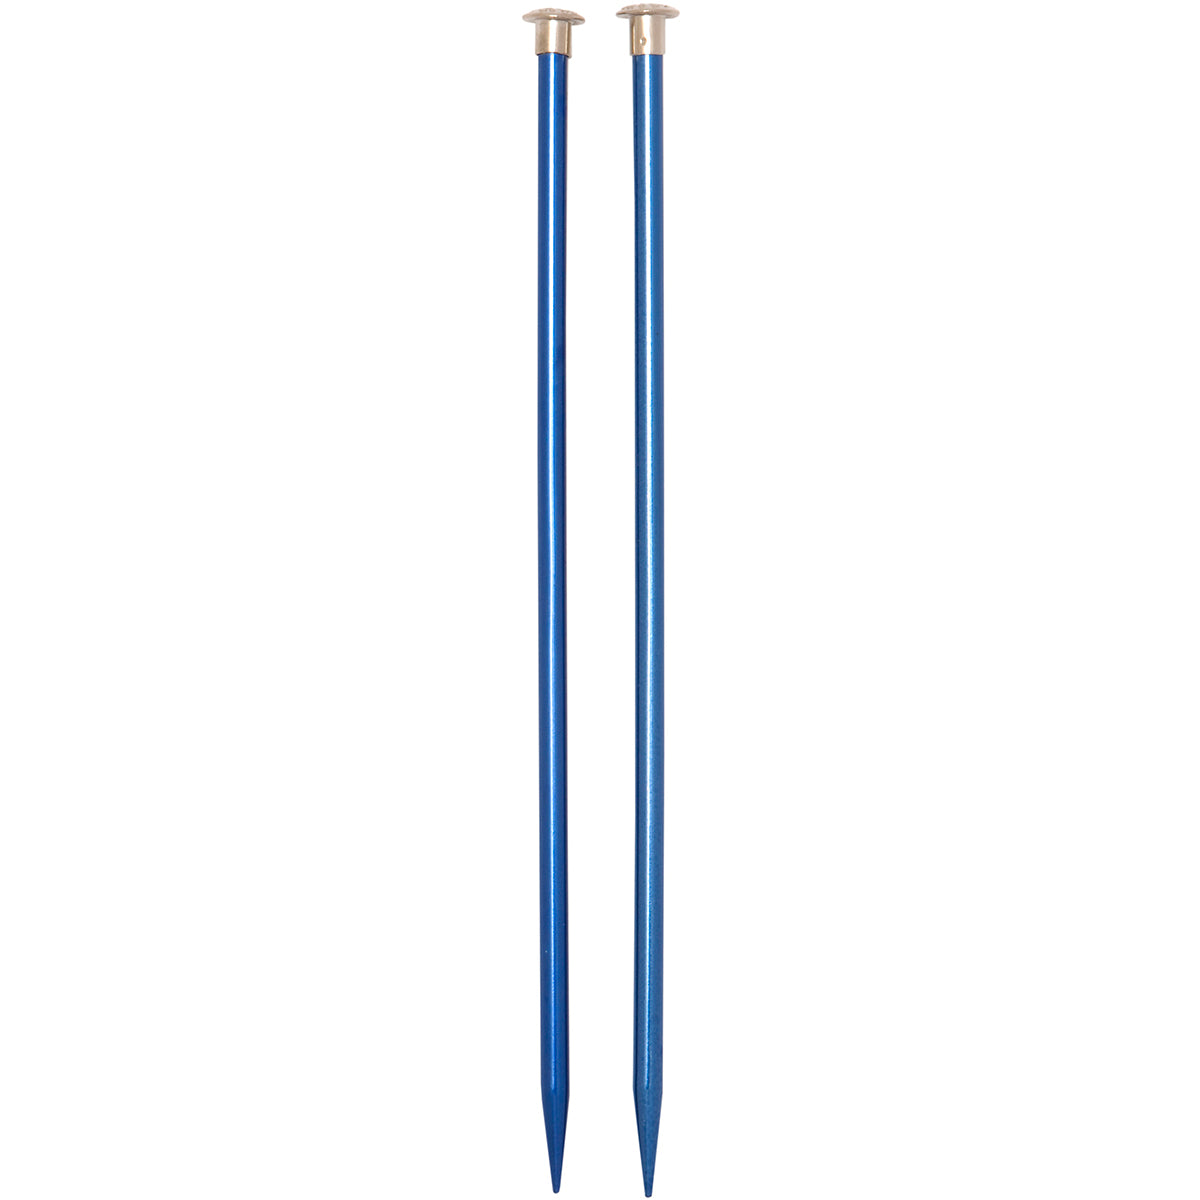 Boye Single Point Aluminum Knitting Needles 10" - Size 10.5/6.5mm